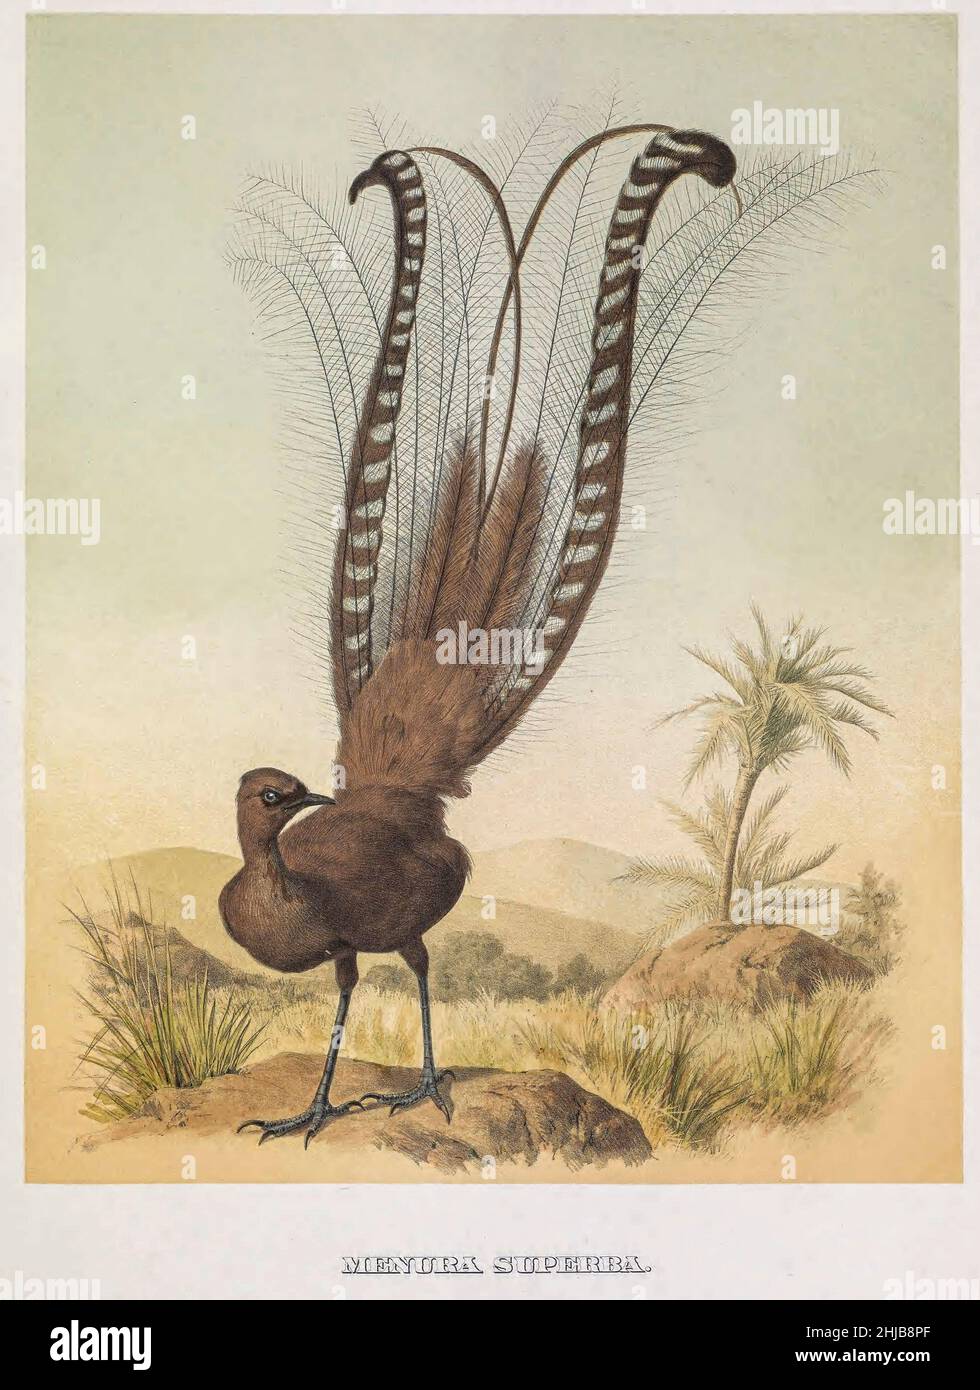 Der hervorragende Lyrebird (Menura novaehollandiae hier als Menura superba) ist ein australischer singvögel, eine von zwei Arten aus der Familie der Menuridae. Er ist einer der größten Singvögel der Welt und bekannt für seine aufwendigen Schwanzausführungen und Balzdarstellungen sowie seine ausgezeichnete Mimikry. Die Art ist endemisch in Australien und wird im Wald im Südosten des Landes gefunden getönte Lithographie von Joseph Smit illustriert, aus dem Buch "die schönen und neugierigen Vögel der Welt" von Charles Barney Cory, Veröffentlicht vom Autor für die Abonnenten Boston USA 1883. Die Platten sind getönte Lithographien, einige mit Stockfoto